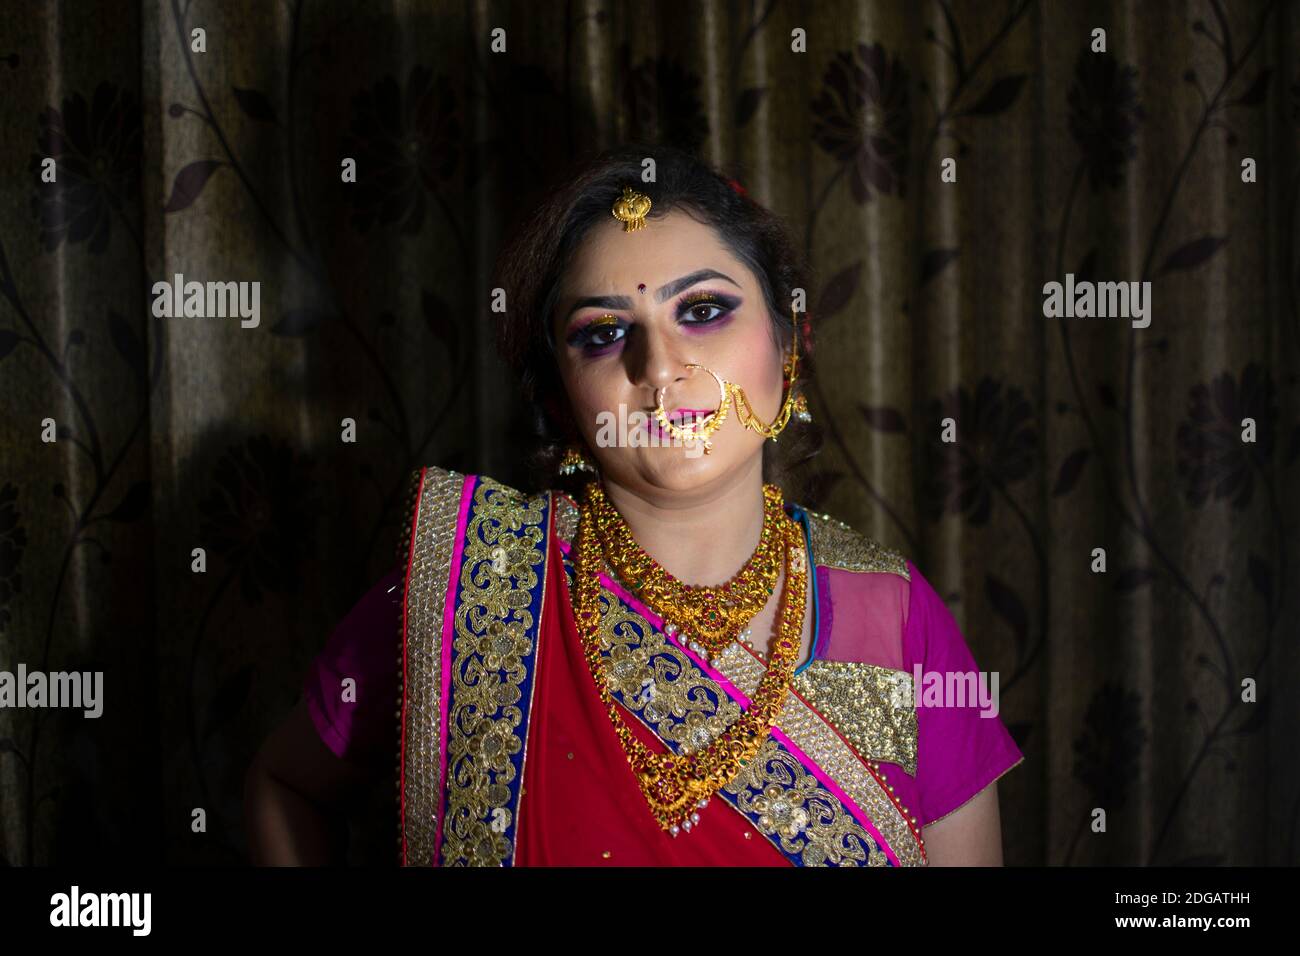 Una bella ragazza indiana in abito da sposa con saree rosse e ornamenti d'oro Foto Stock